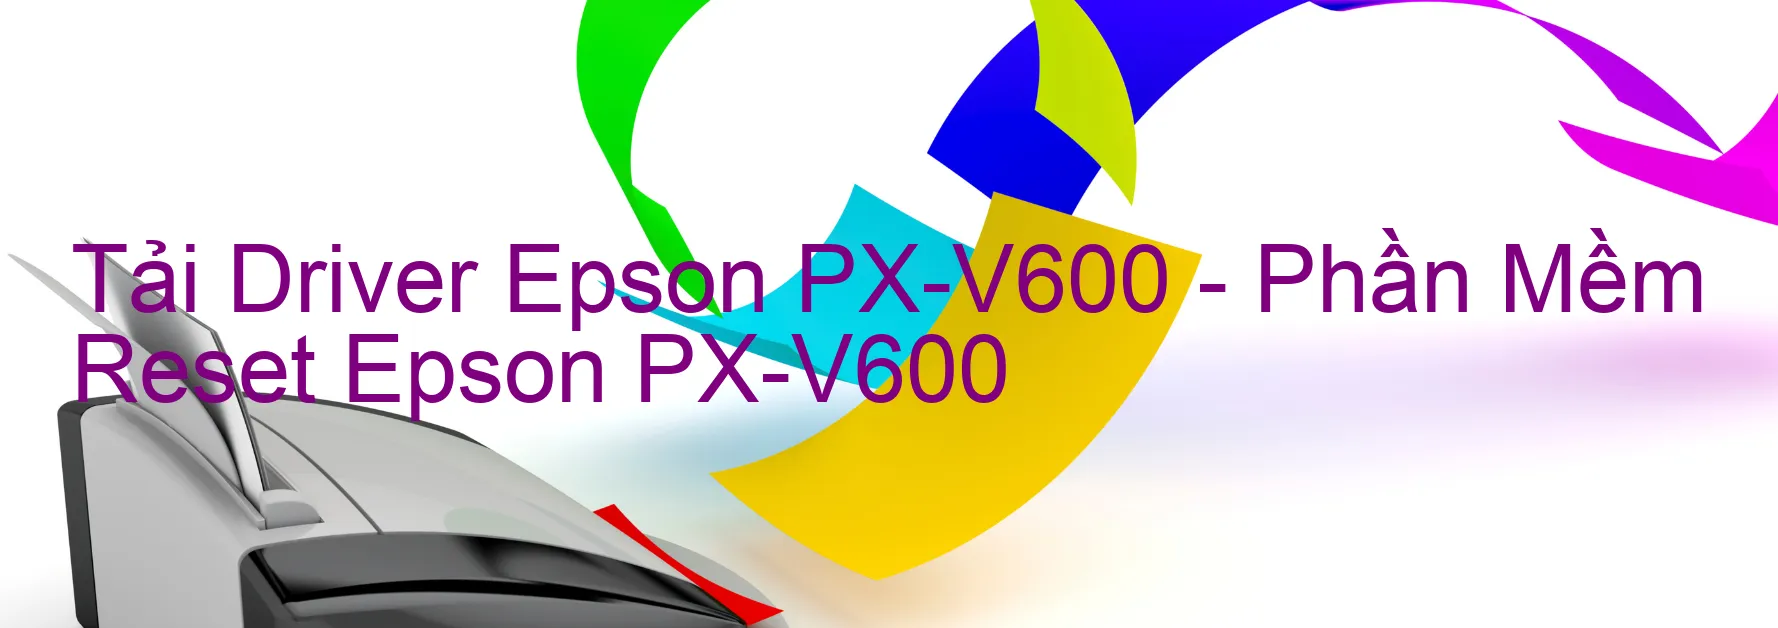 Driver Epson PX-V600, Phần Mềm Reset Epson PX-V600